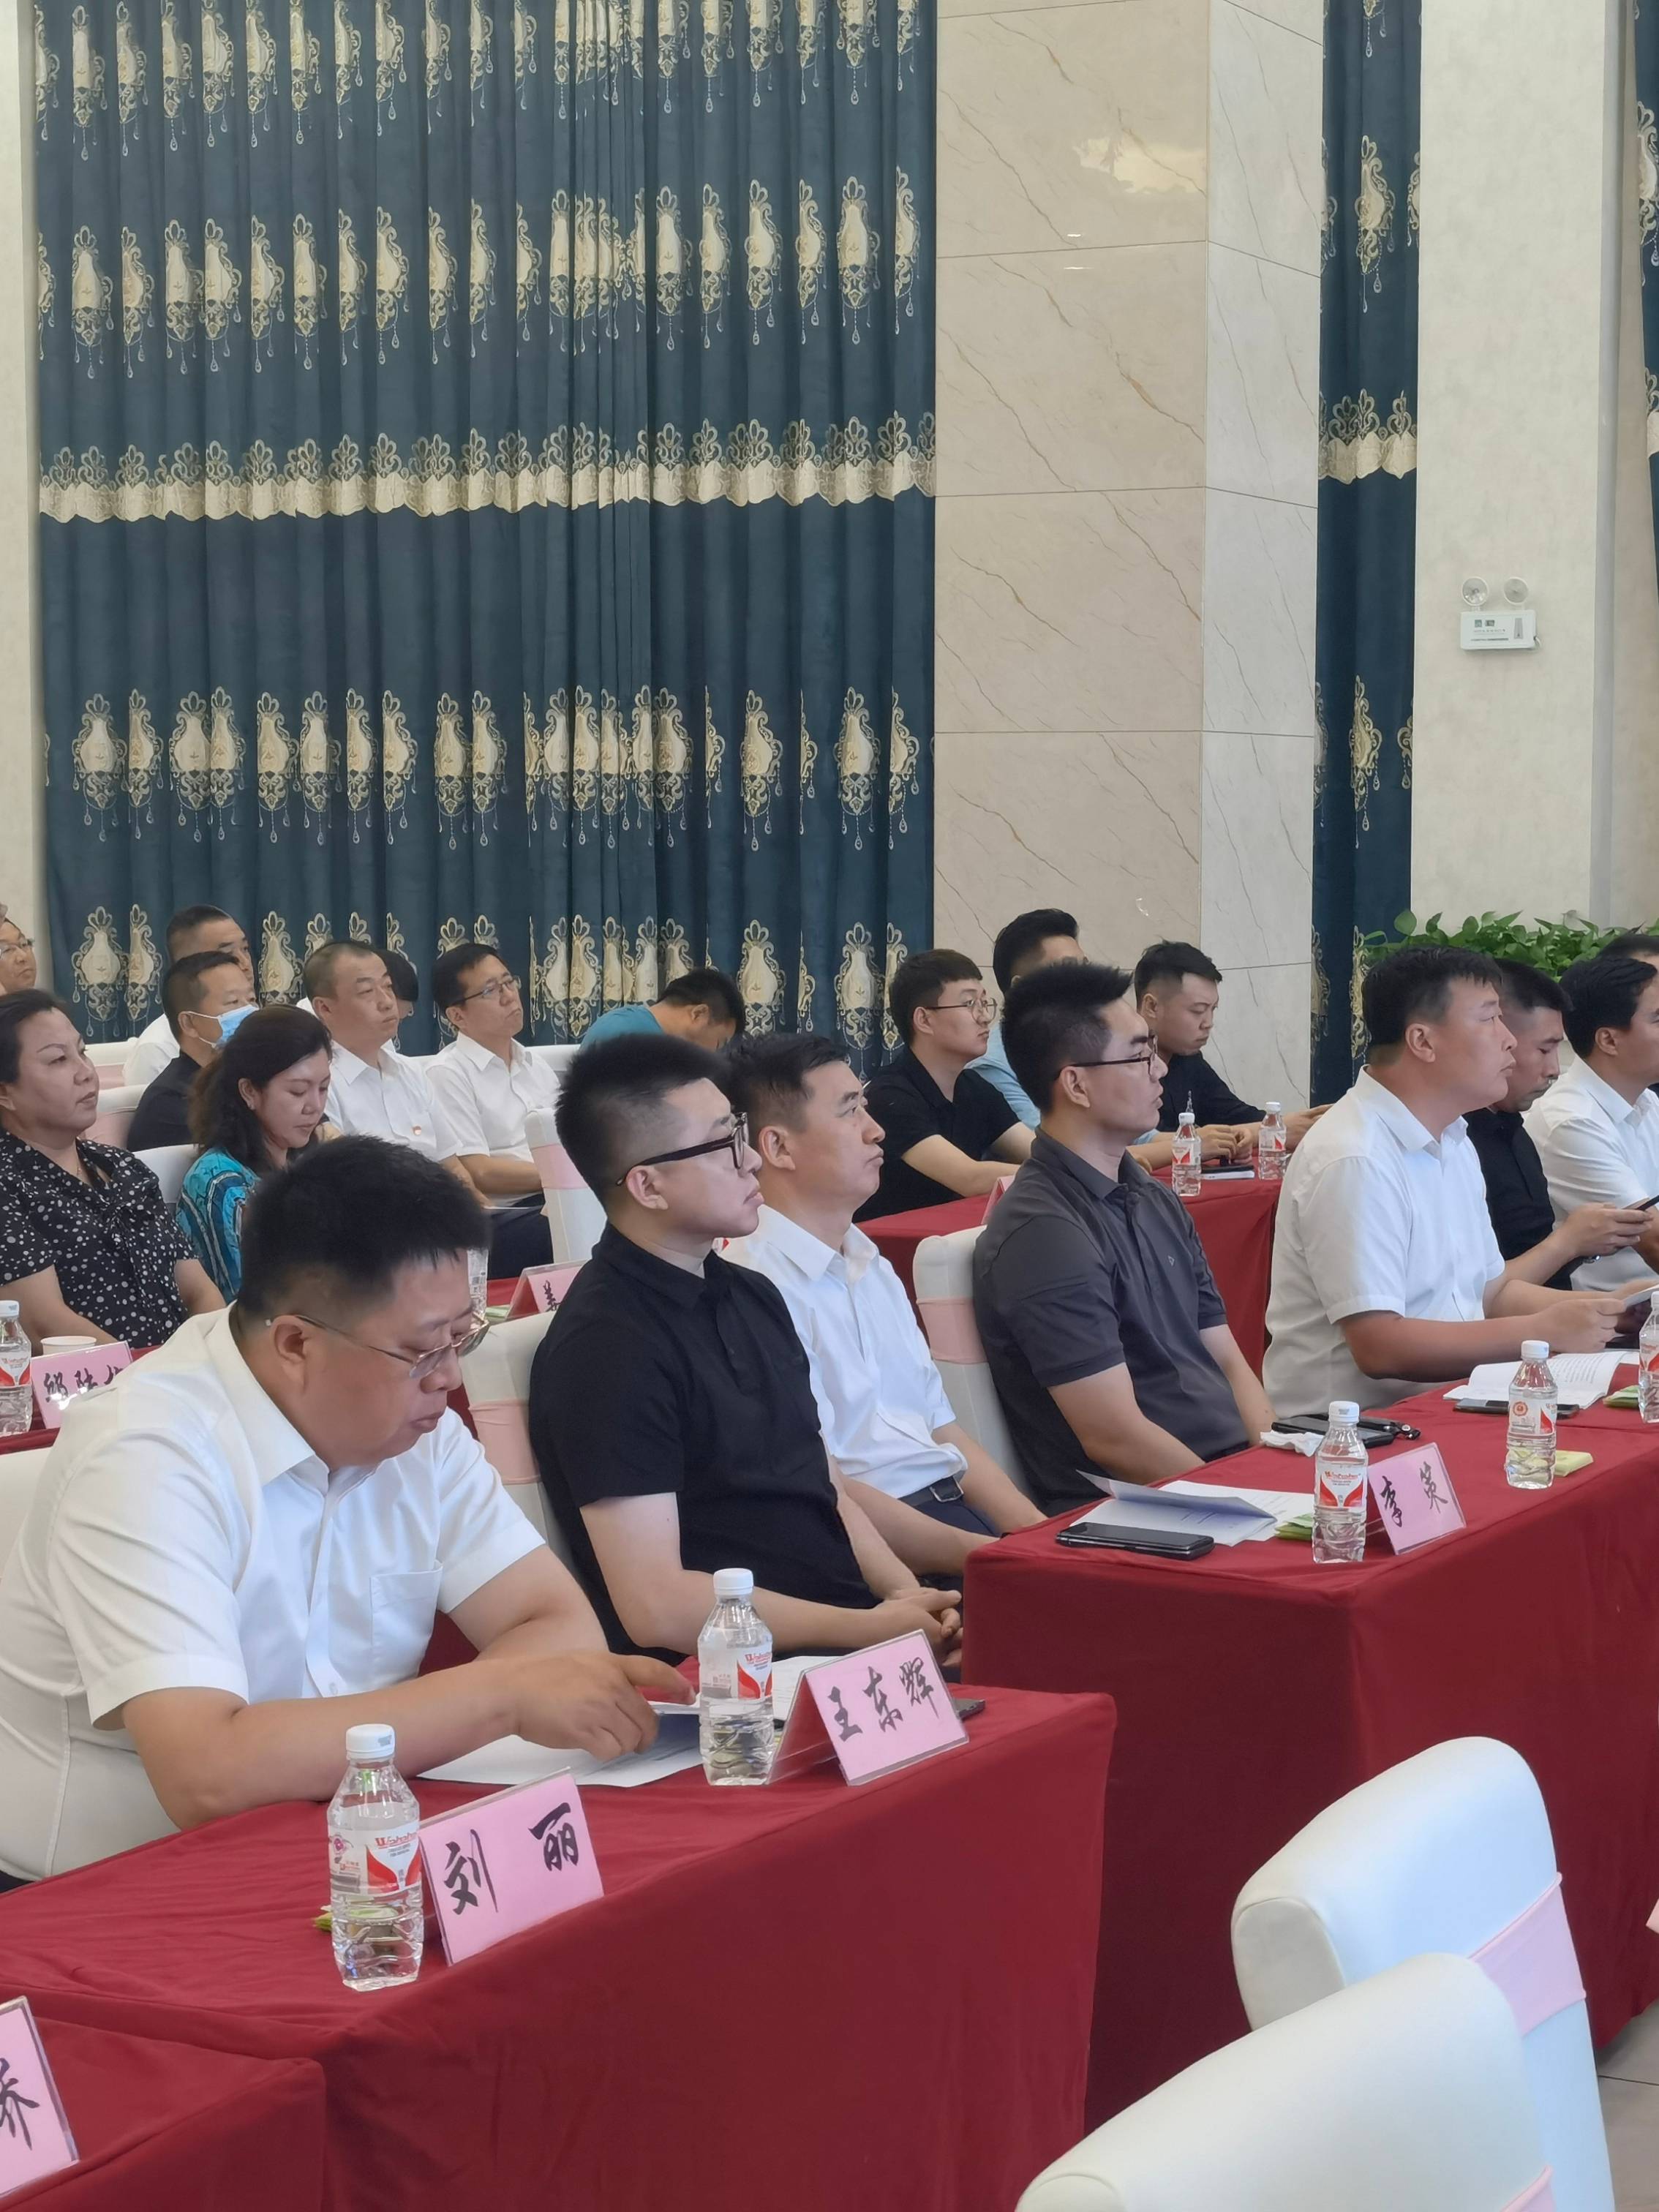 7月26日,碧桂园黑龙江区域总裁李策及企业相关负责人深入虎林市,与